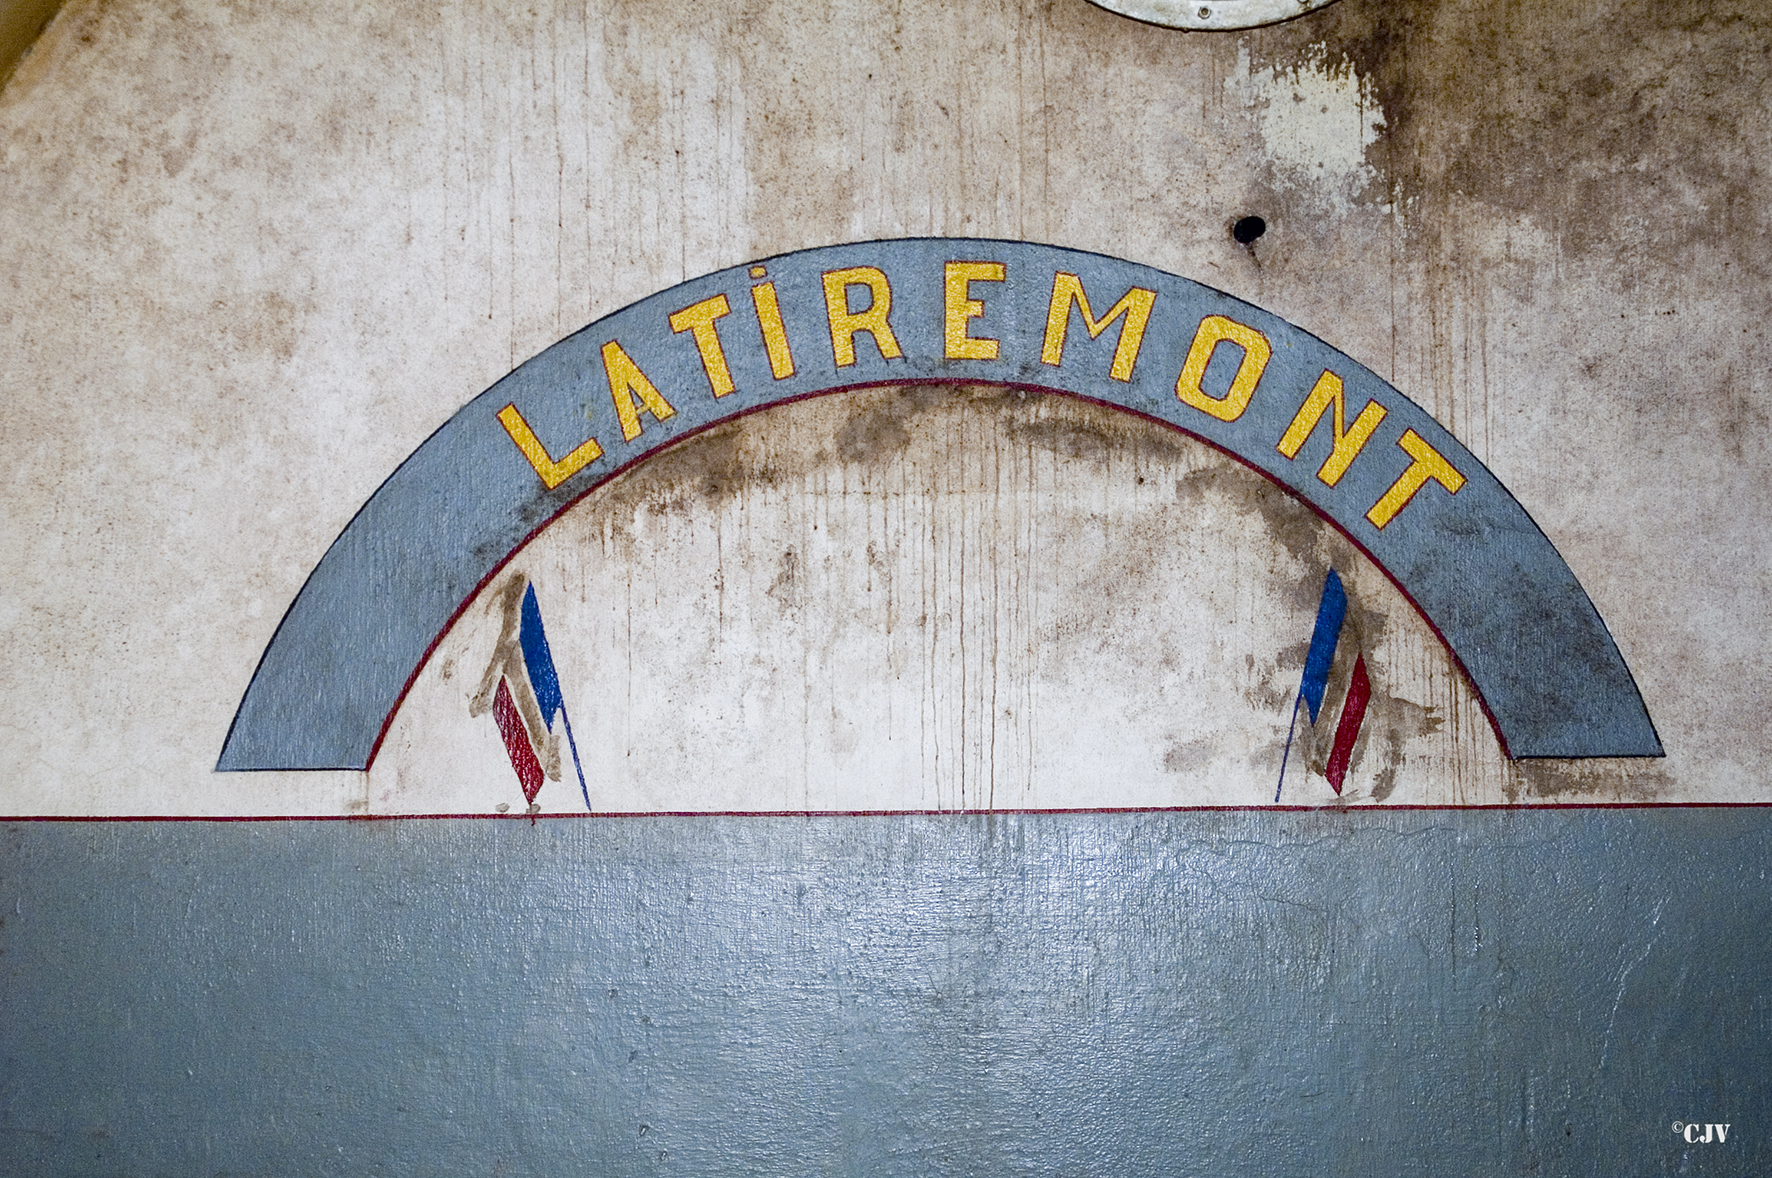 Ligne Maginot - LATIREMONT - A3 - (Ouvrage d'artillerie) - Peinture murale